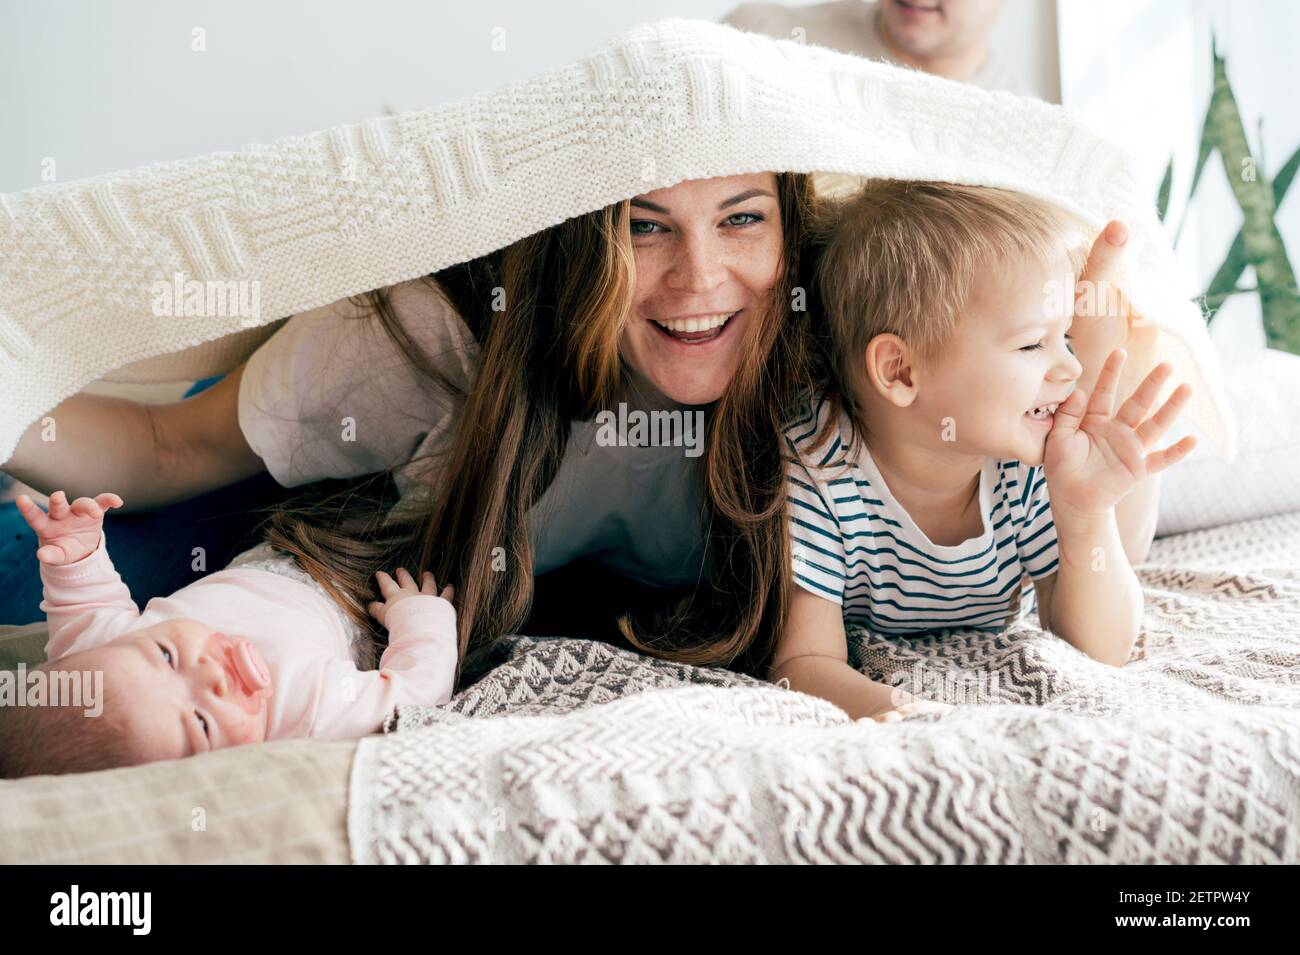 La mummia felice gioca con i bambini sul letto e copre i bambini e se stessa con una coperta. Divertimento per tutta la famiglia. Foto Stock